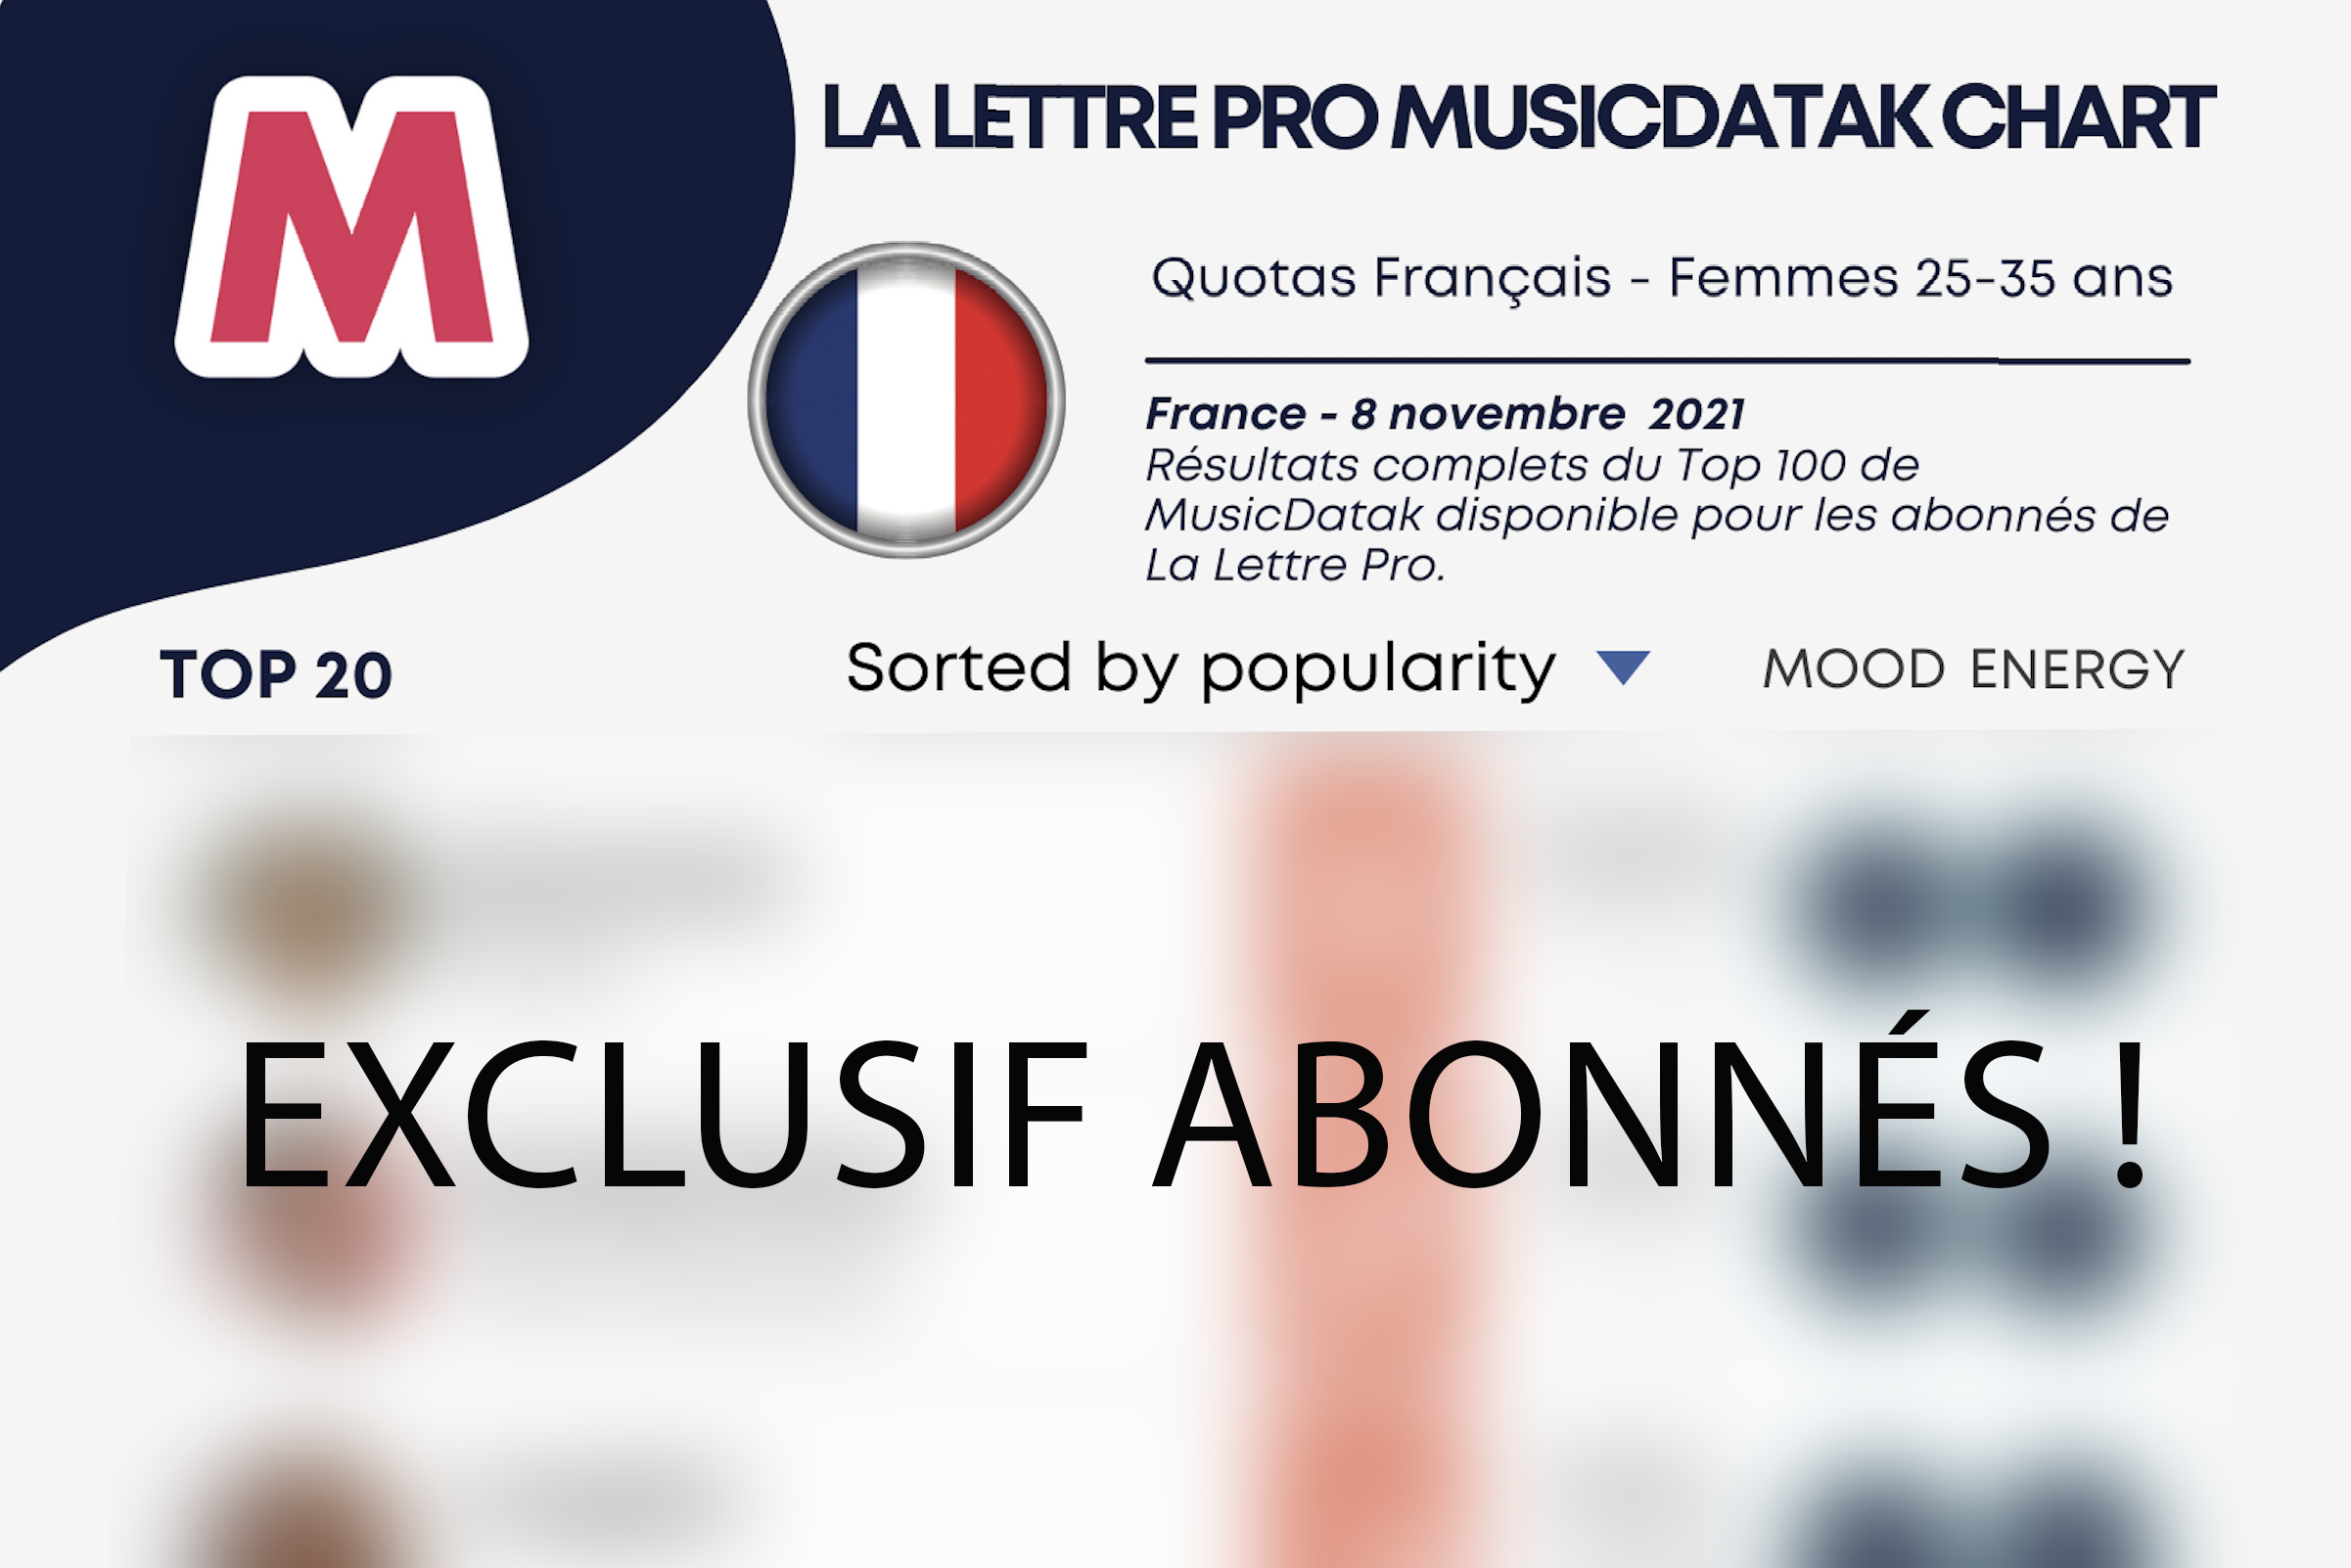 La Lettre Pro MusicDatak Chart #1 - Quotas Français - Femmes 25-35 ans